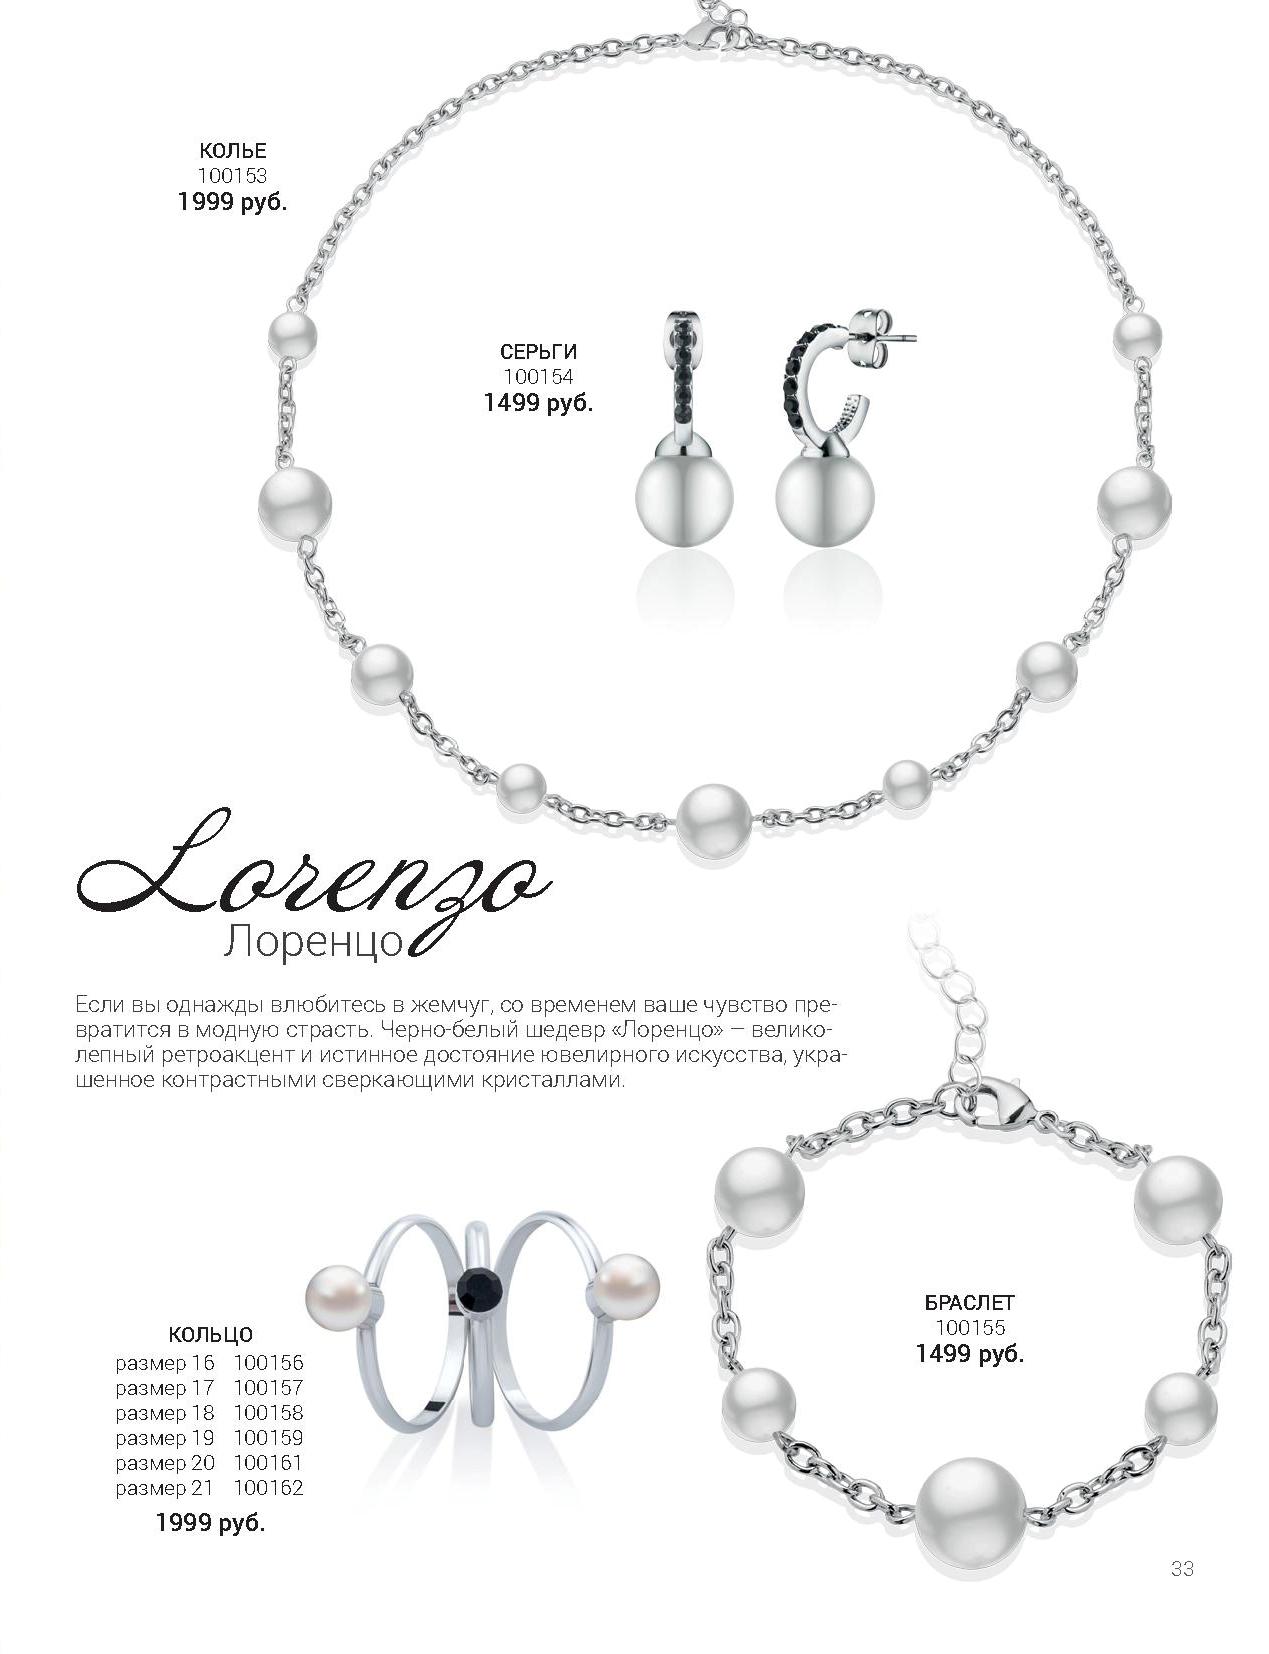 Бижутерия Флоранж - Колье, серьги, браслет и кольцо "Лоренцо"